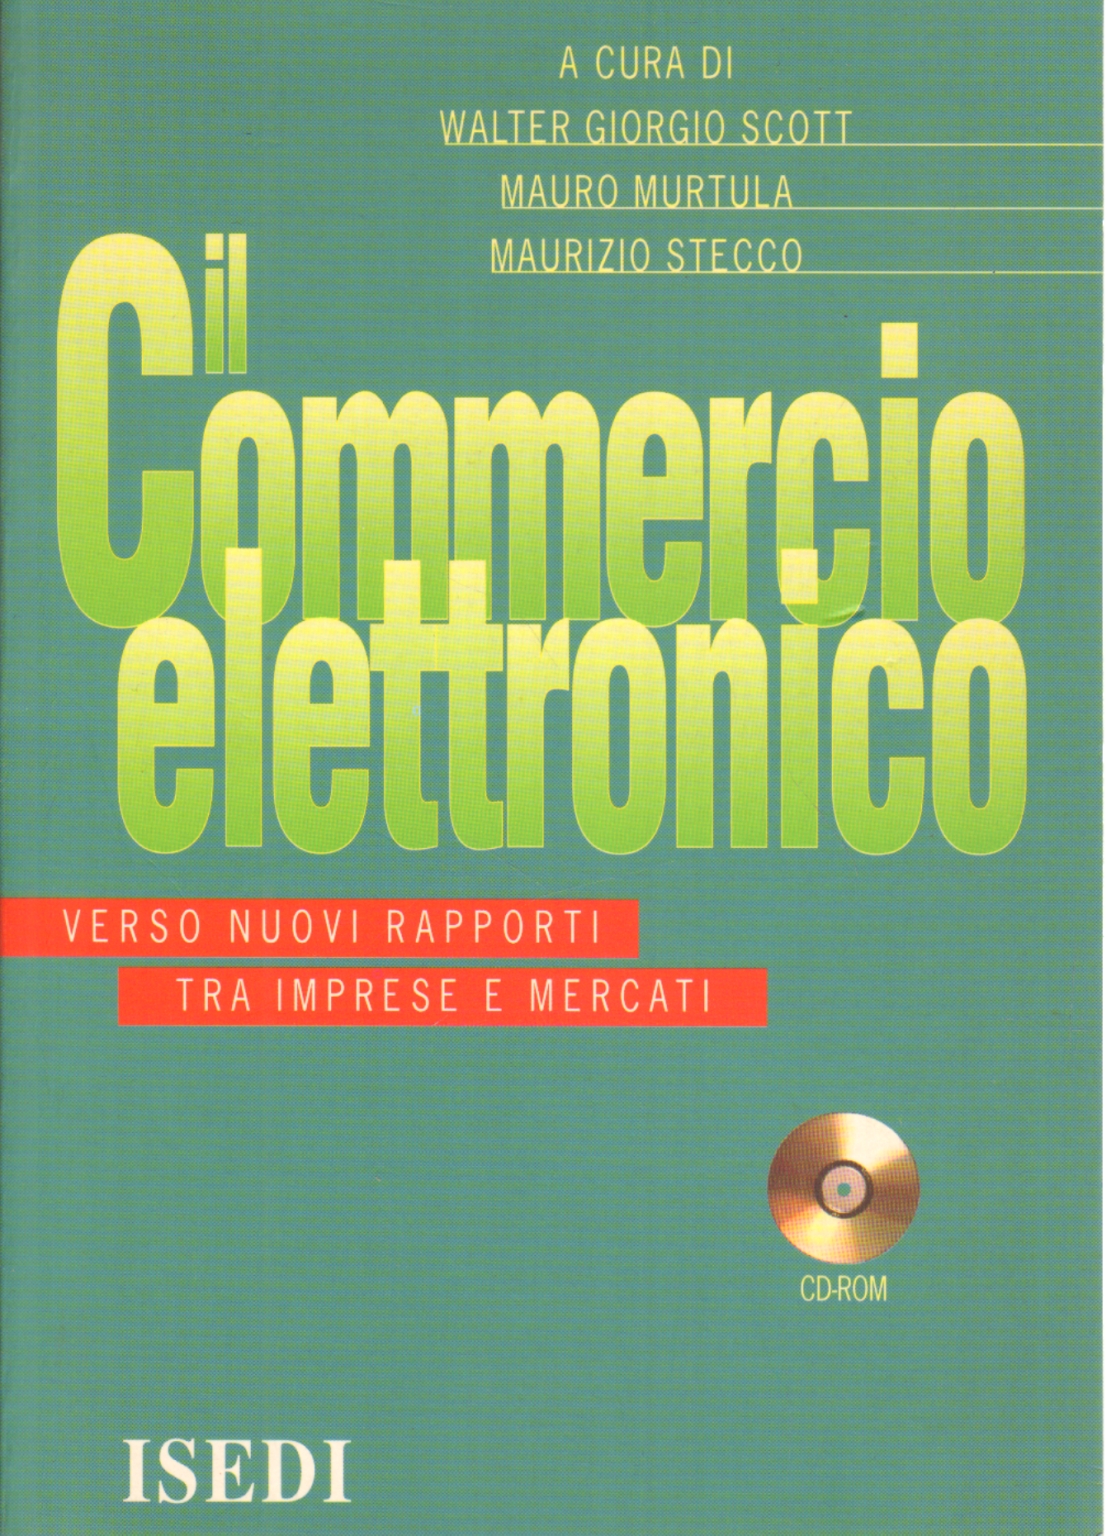 El comercio electrónico (CD-ROM), Walter Giorgio Scott Mauro Murtula Maurizio Stecco